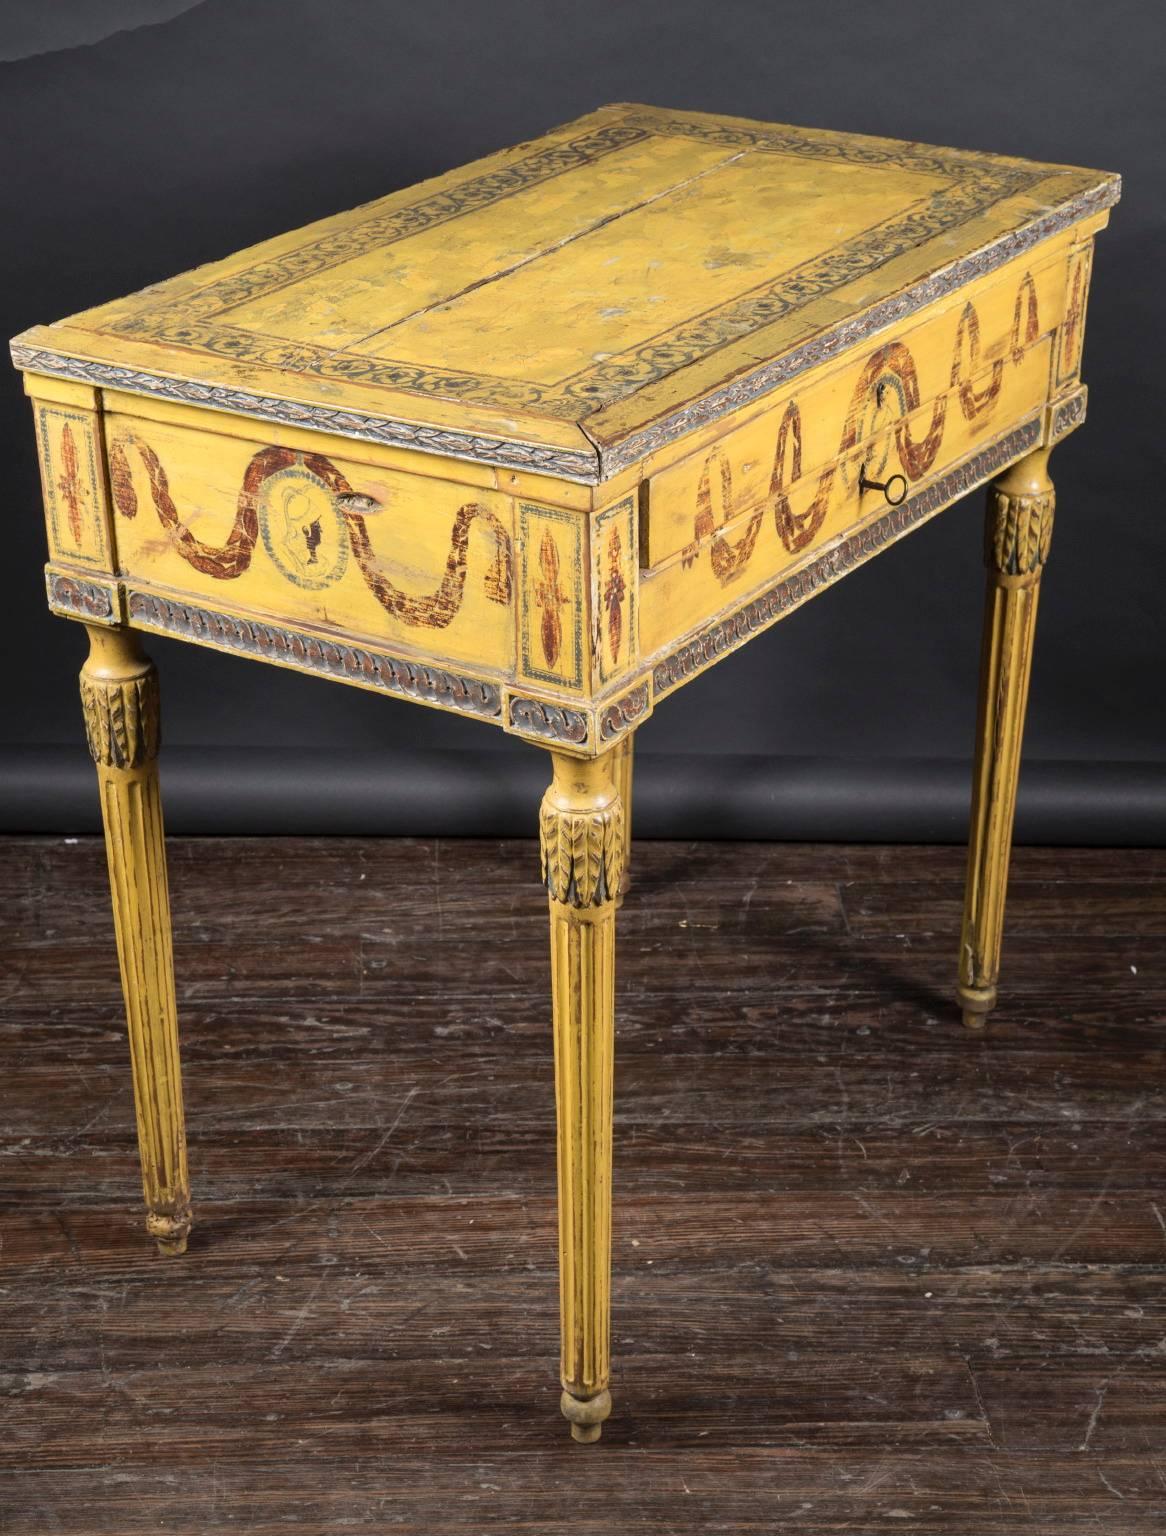 Dieser klassische und schlichte handbemalte Louis XVI-Tisch mit zwei mittleren Schubladen stammt aus dem 18. Jahrhundert. Das antike französische Möbelstück ist oben und unten mit Details an der Schürze versehen und ruht auf langen, kannelierten